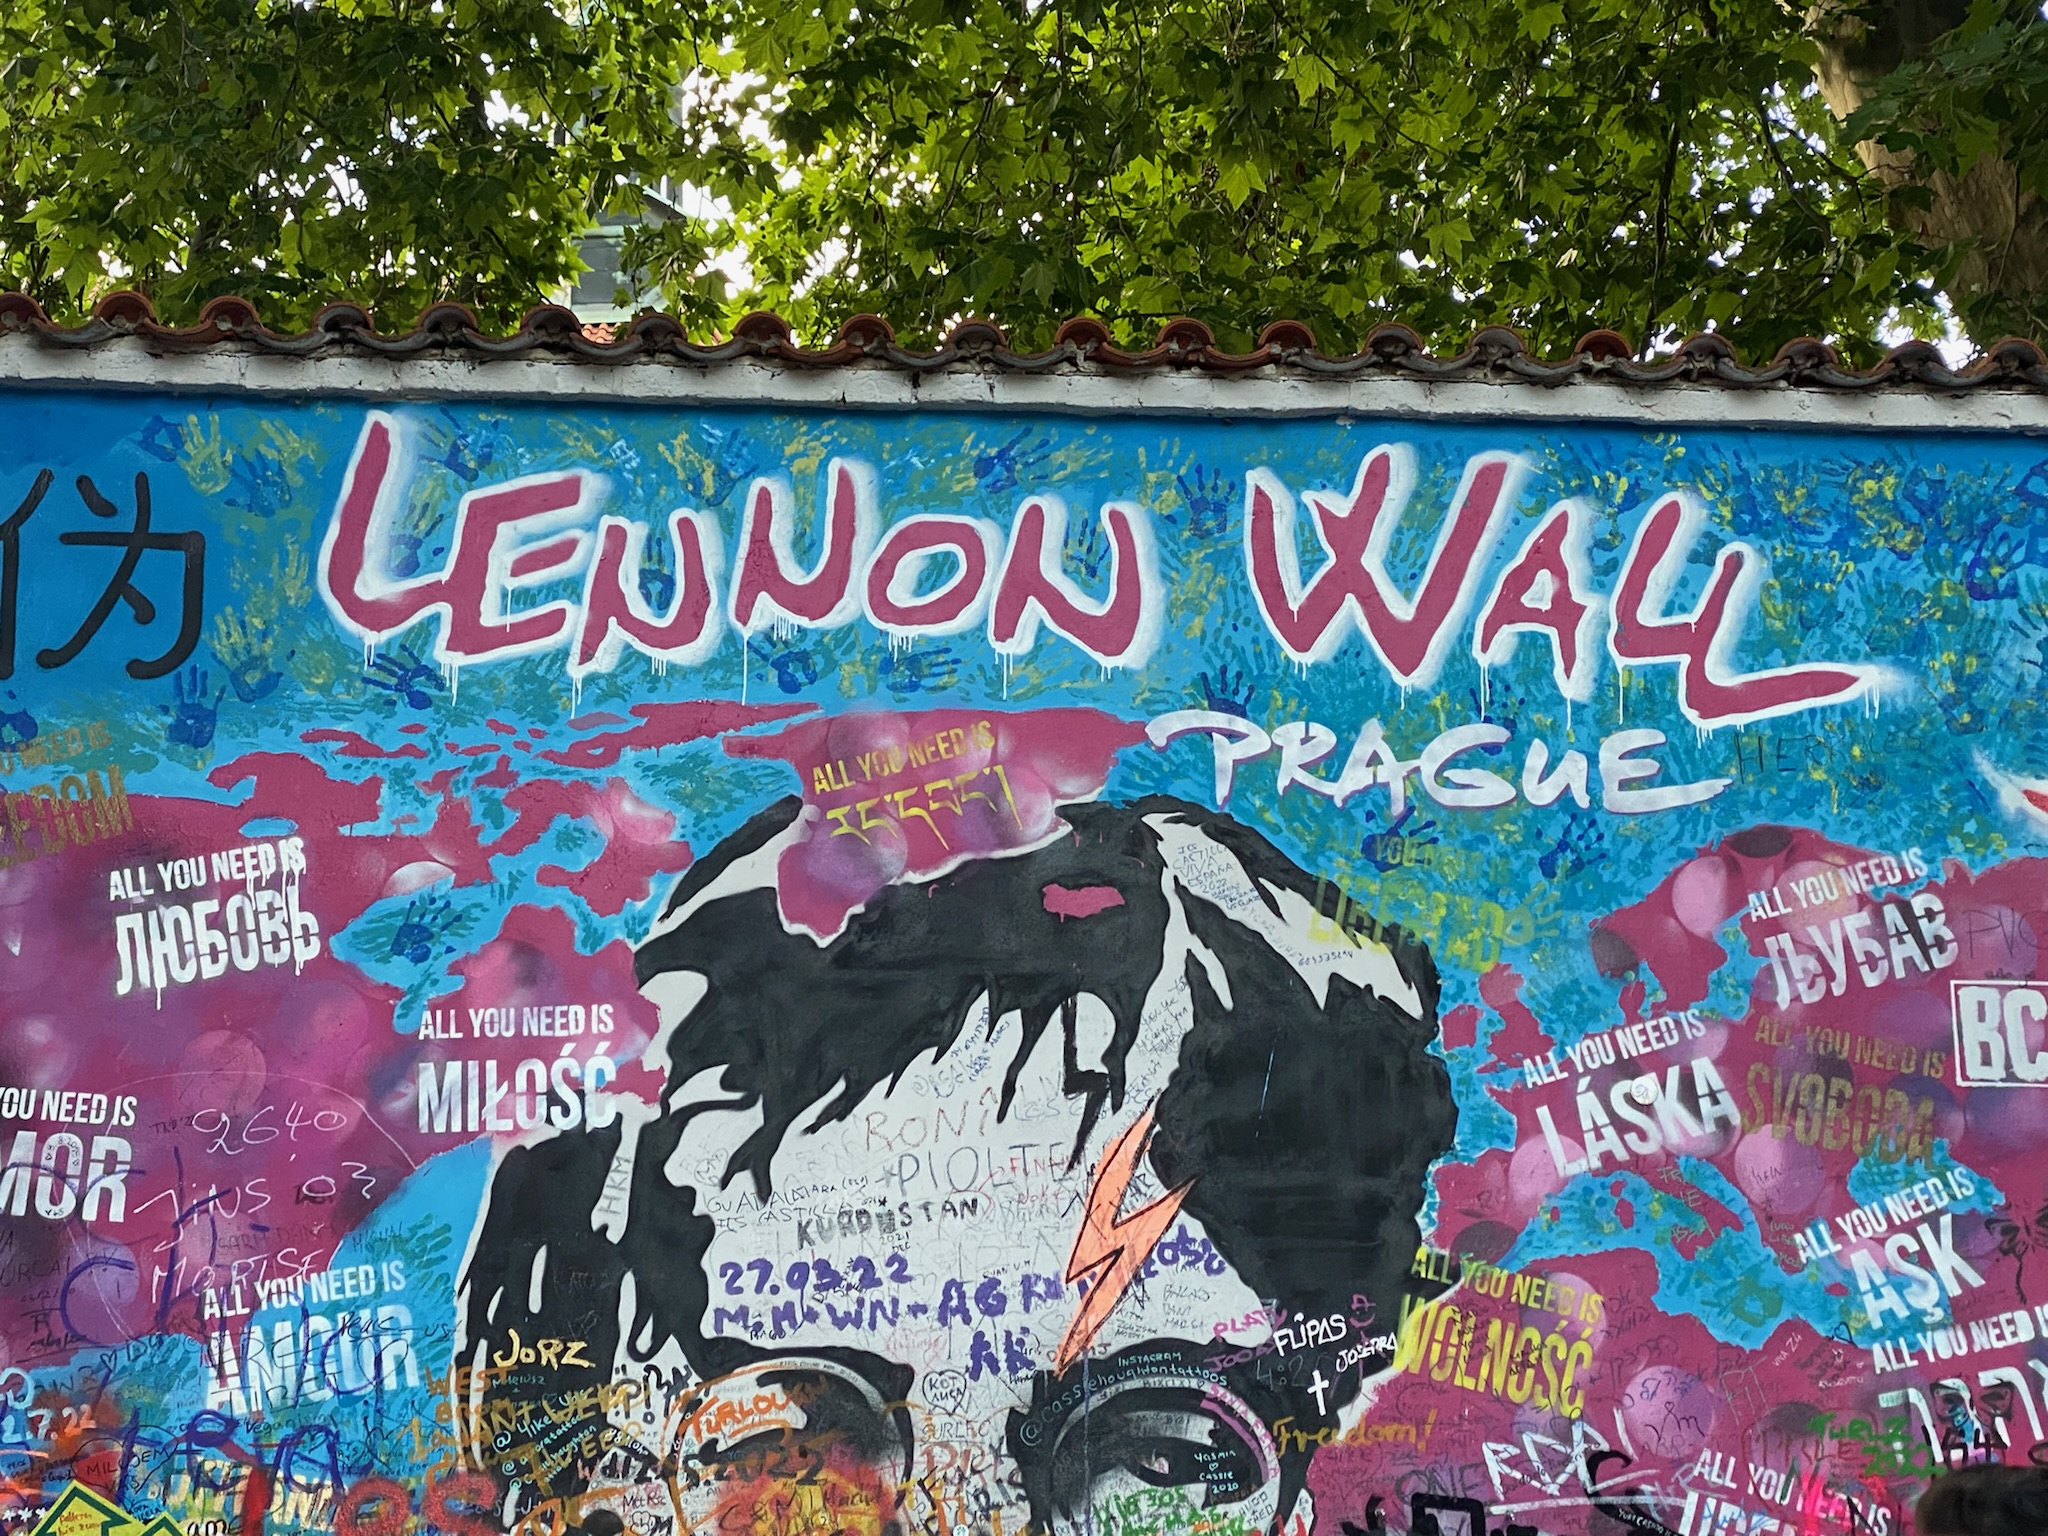 John Lennon Memorial wall in Prague